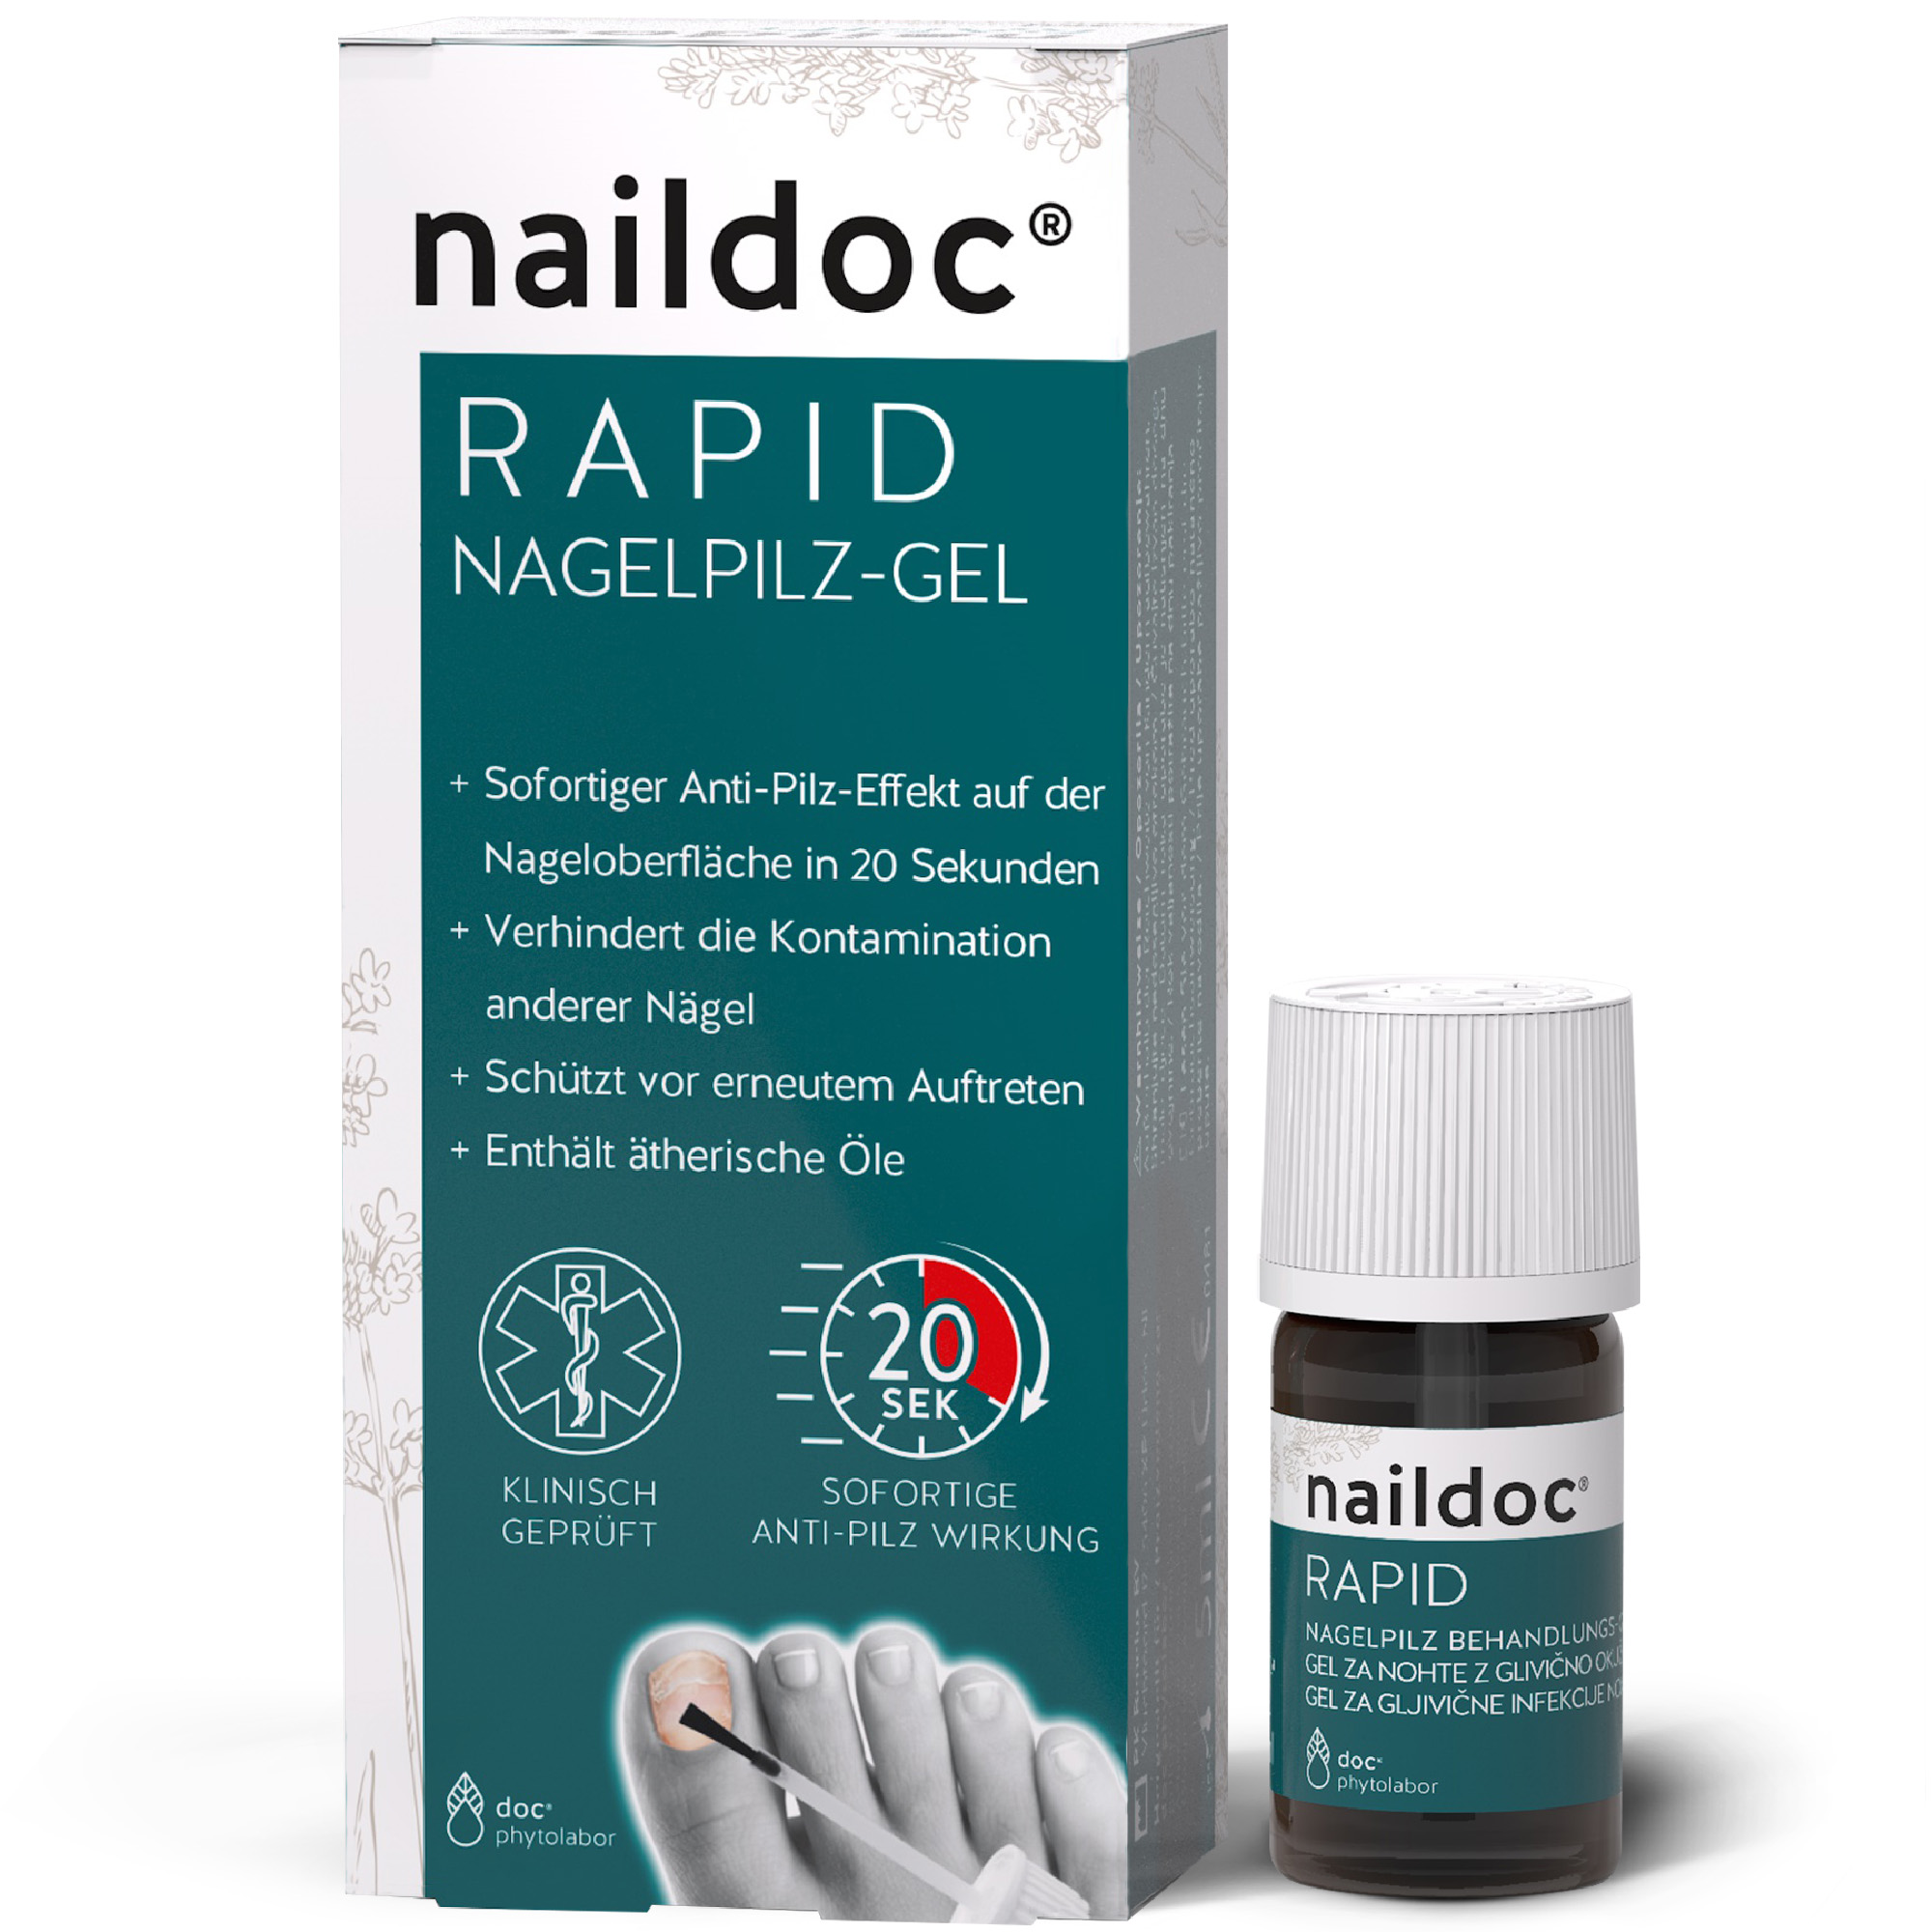 naildoc® RAPID Nagelpilz Behandlungs-Gel